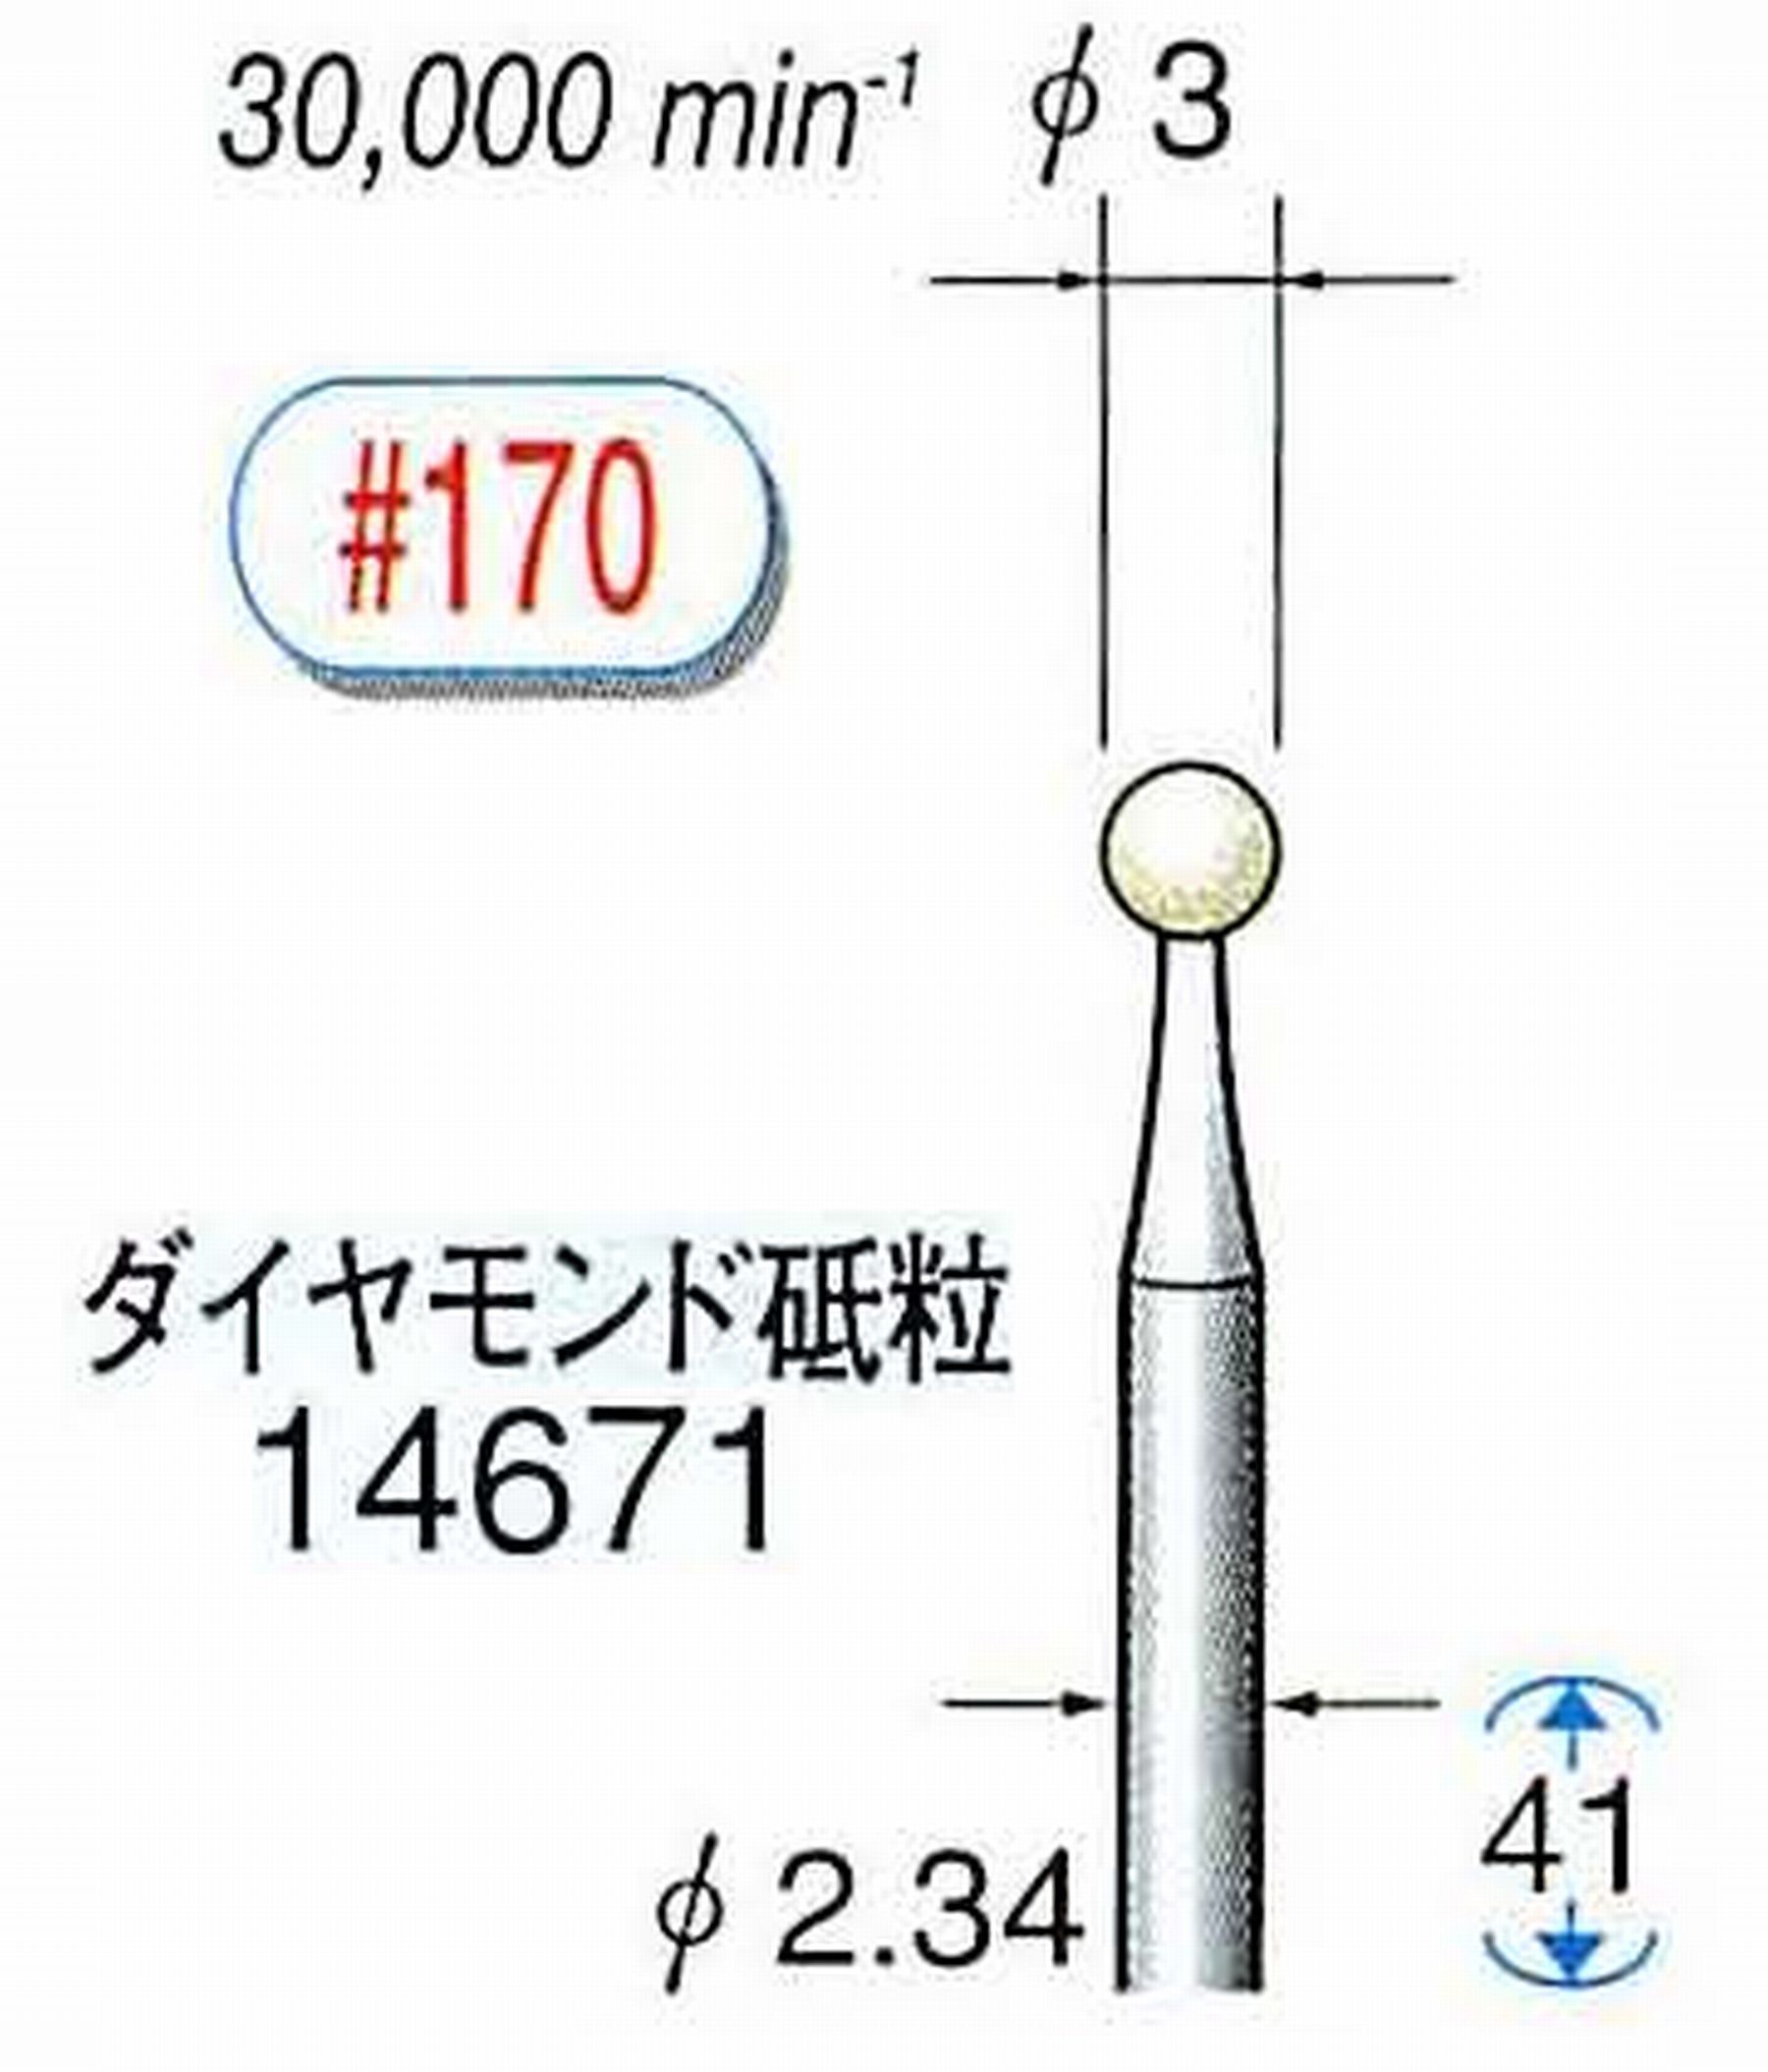 ナカニシ/NAKANISHI セラミックダイヤモンド砥石 ダイヤモンド砥粒 軸径(シャンク)φ2.34mm 14671